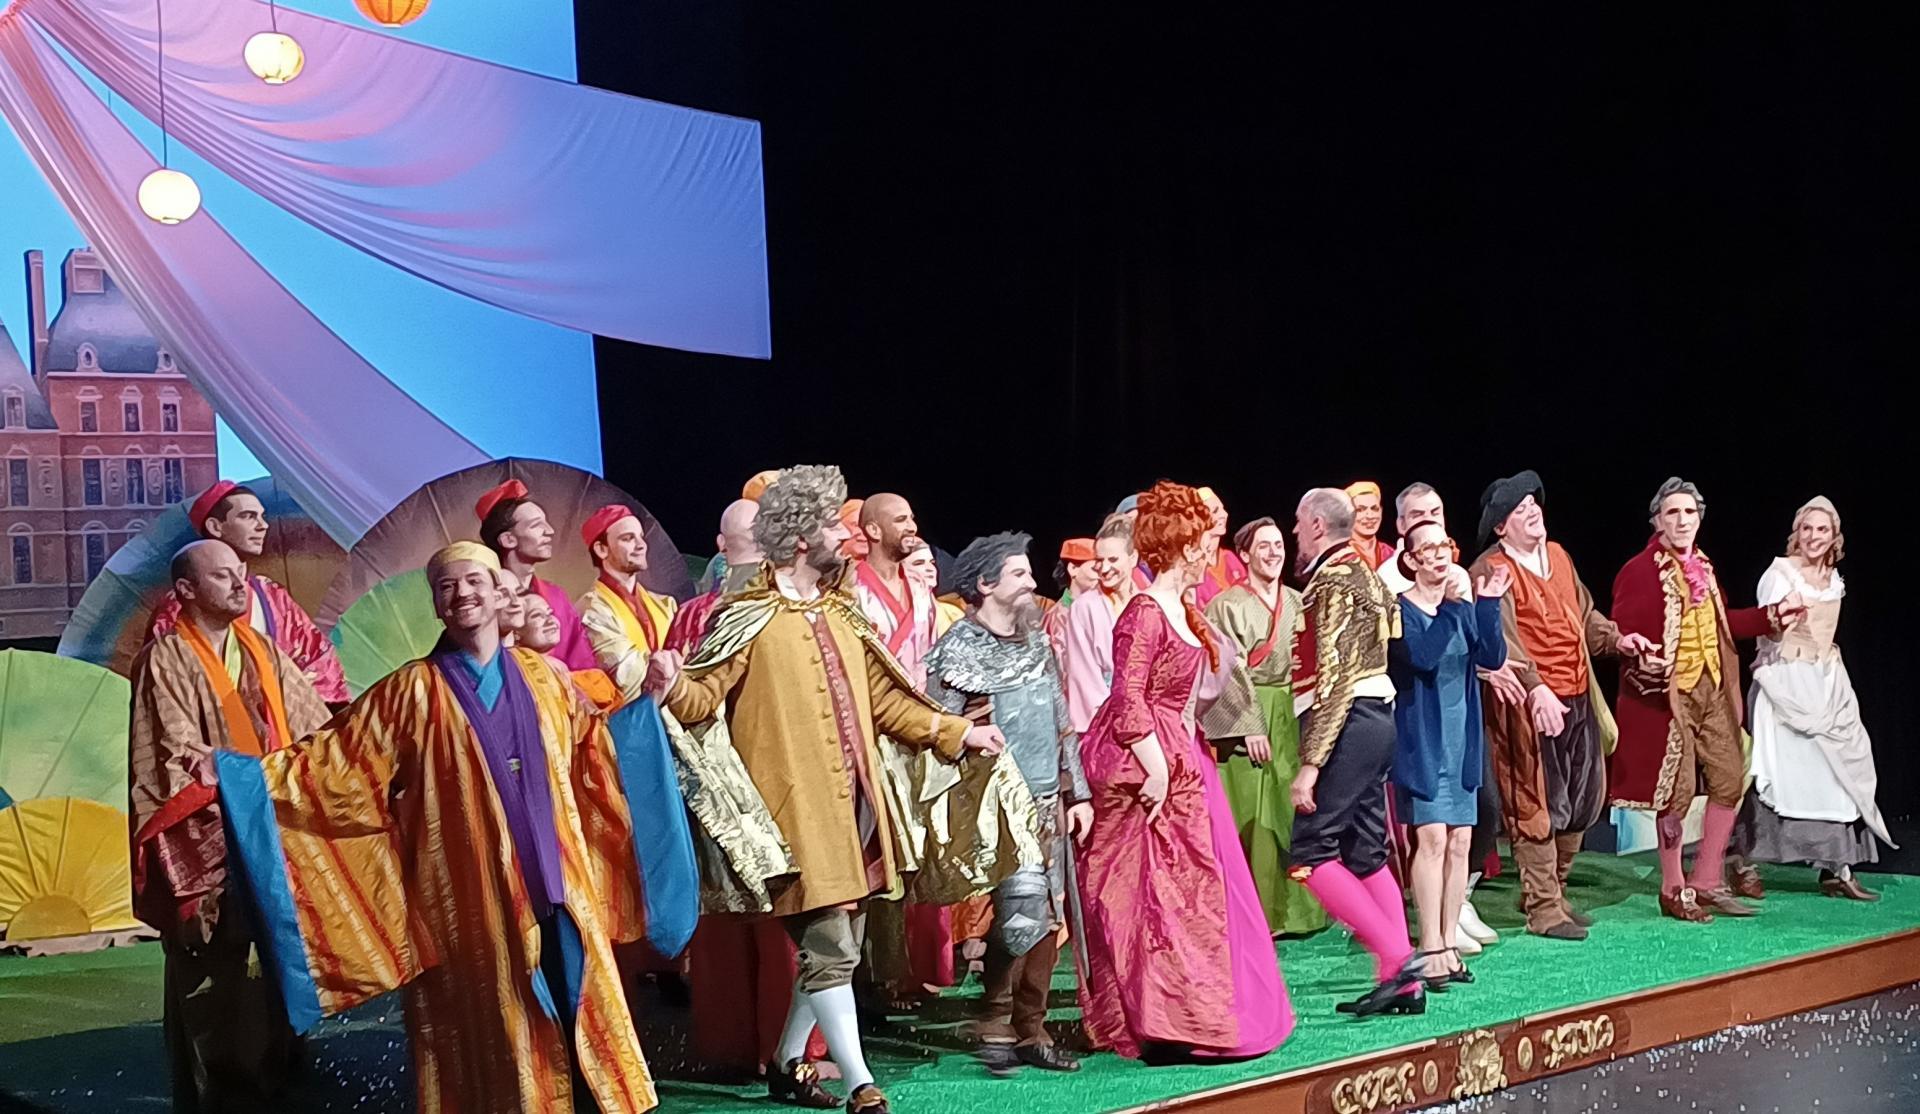 Don Quichotte chez la Duchesse - Opéra Royale de Versailles (foto di Paolo Scarnecchia)